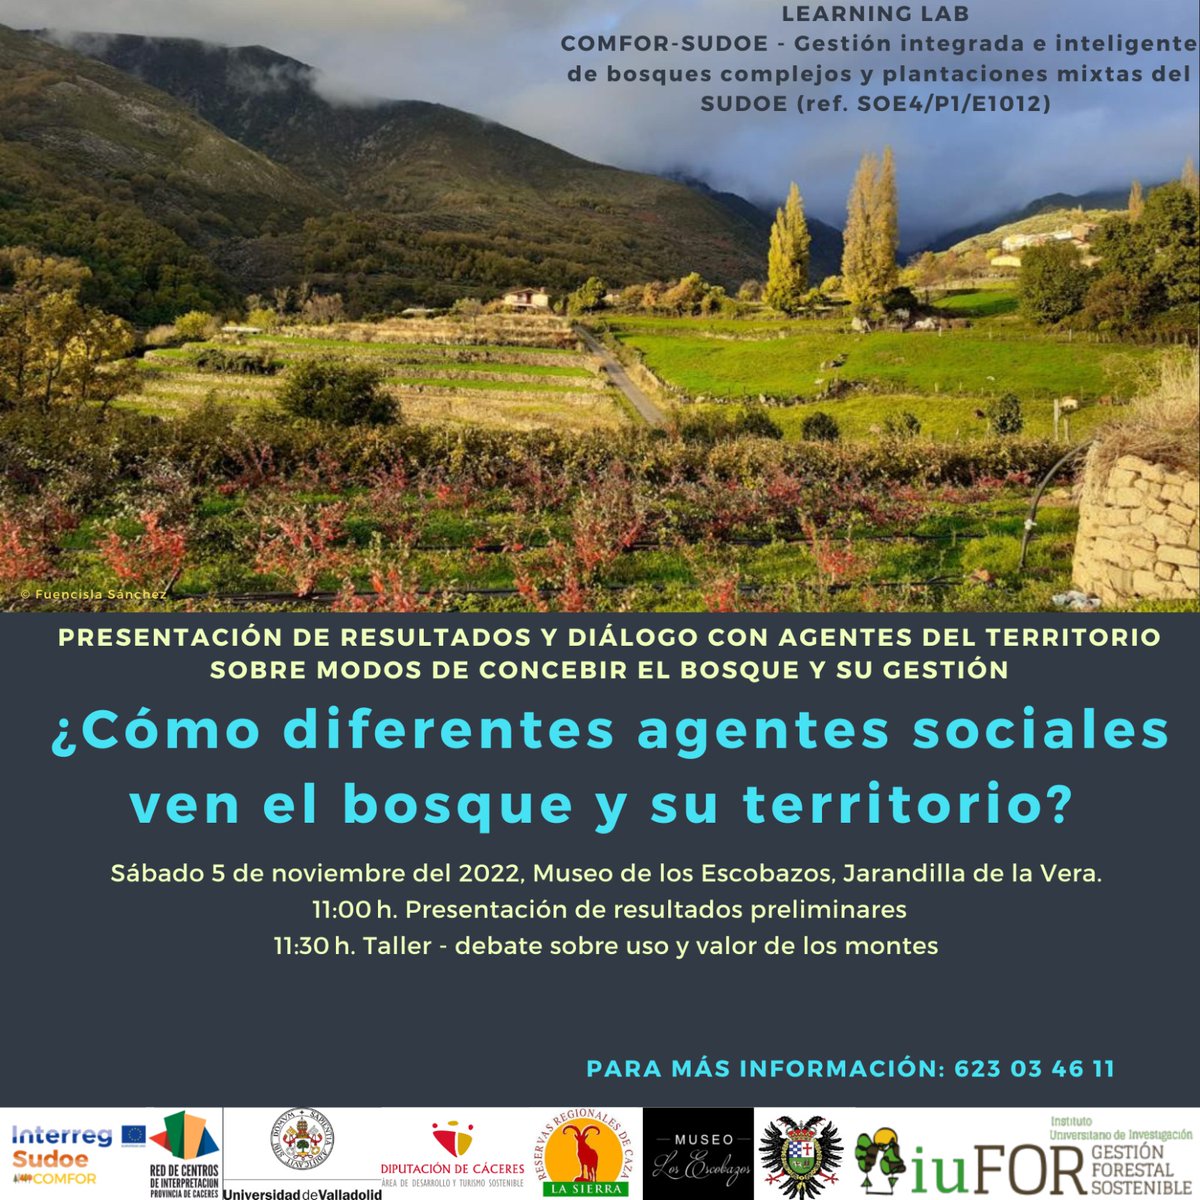 Ayer tuvo lugar en nuestro @museo_i de #jarandilladelavera la presentación de resultados y dialogo con agentes del territorio sobre modos de concebir el bosque y su gestión. 

#comforsudoe 
#InterregSudoe 
#gestionterritorio

#Extremadura 💚🤍🖤